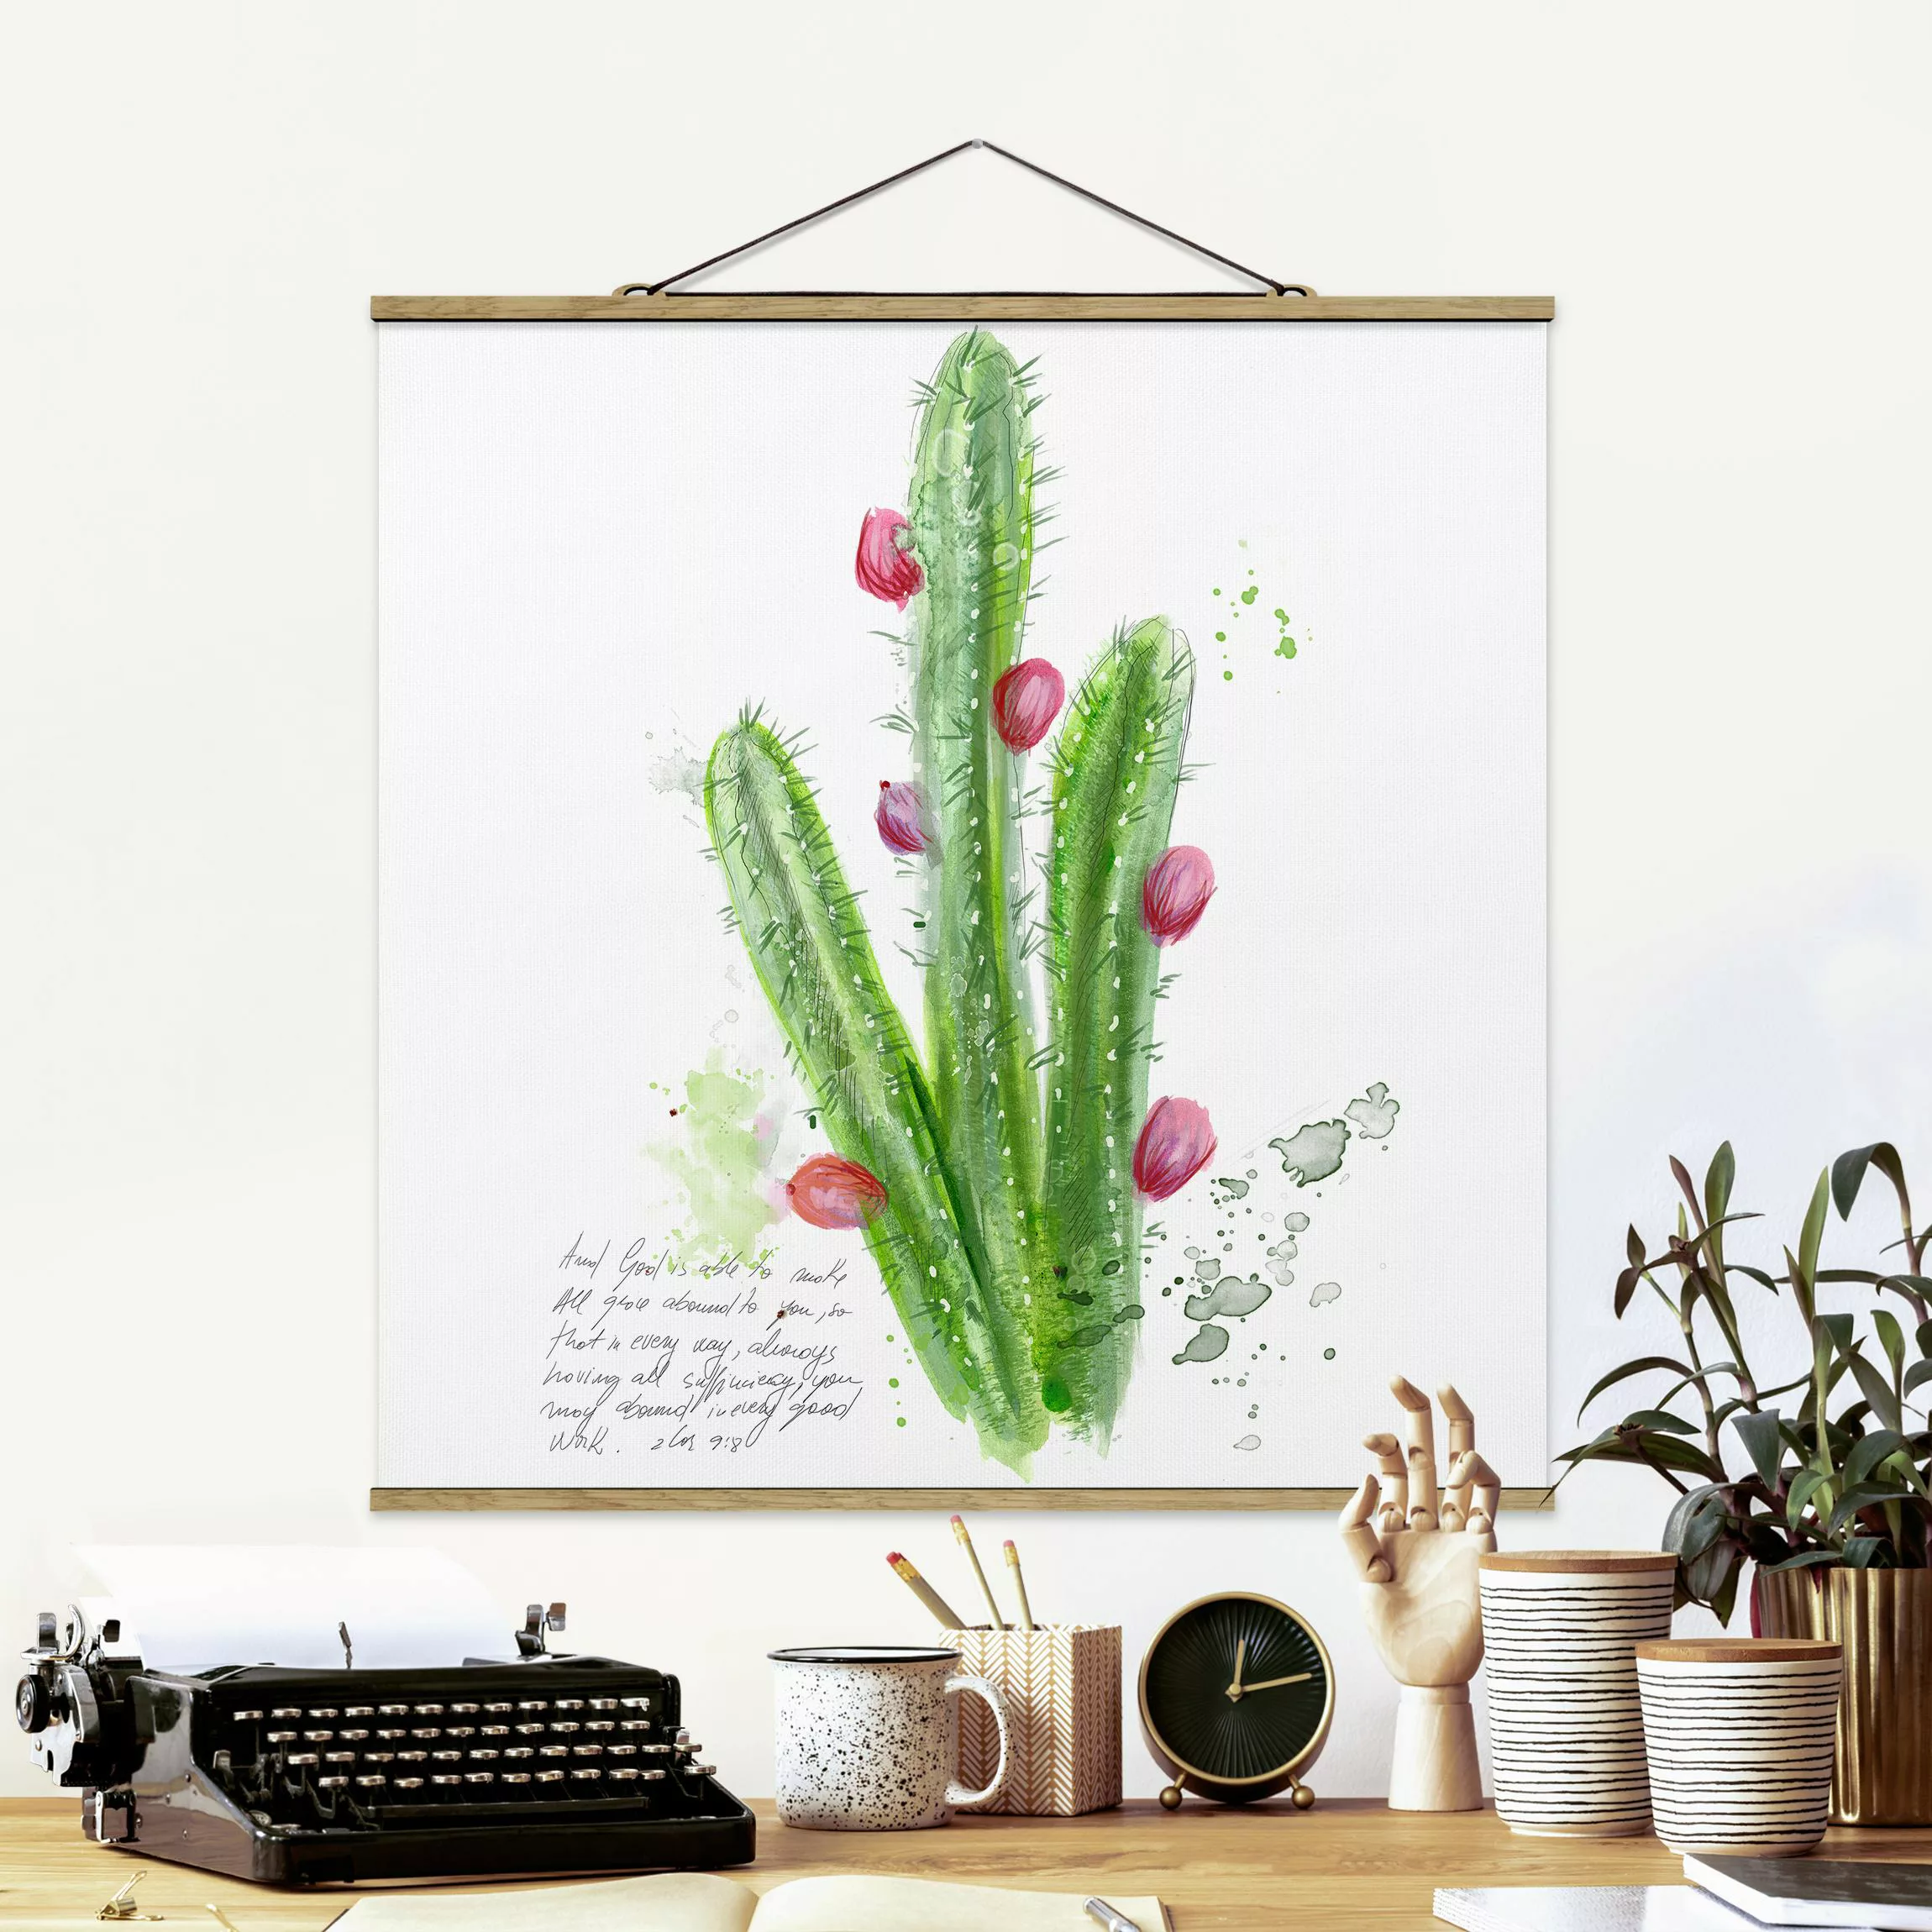 Stoffbild Blumen mit Posterleisten - Quadrat Kaktus mit Bibelvers II günstig online kaufen